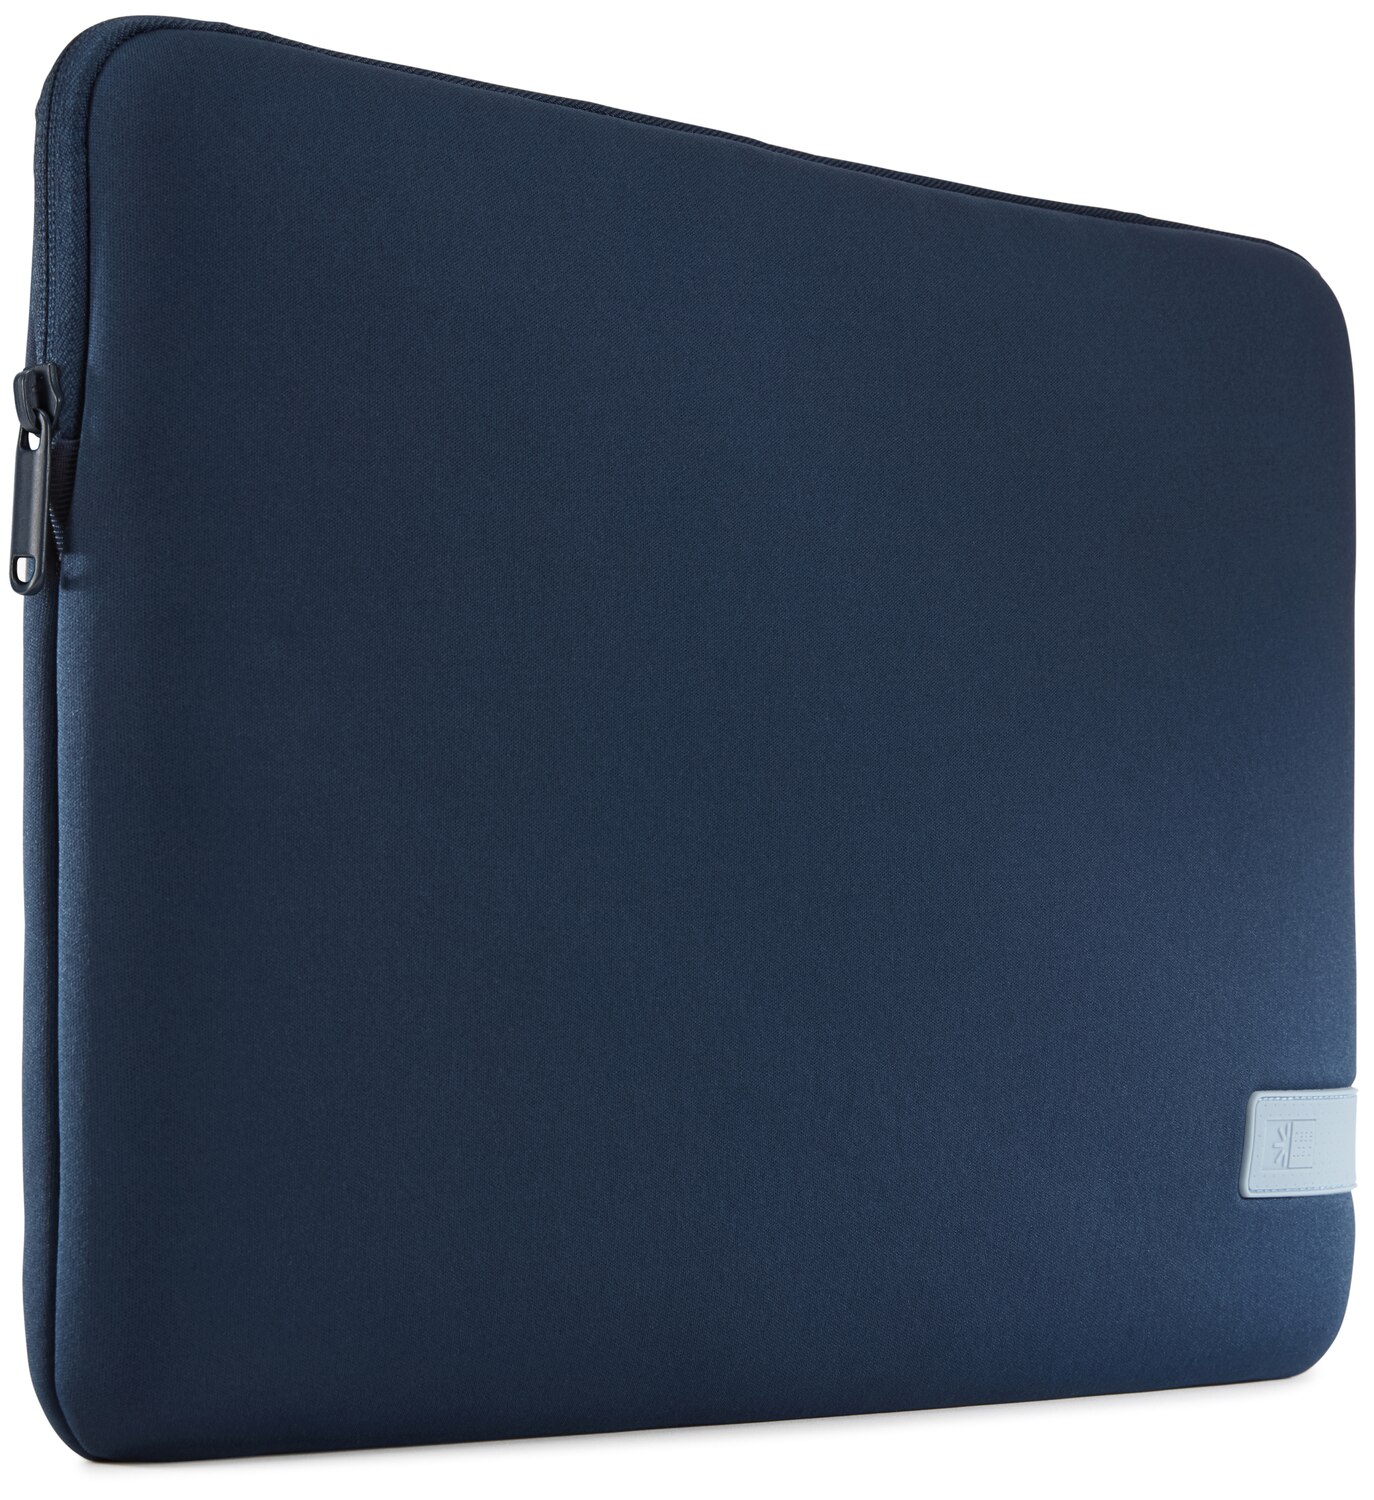 Reflect 15.6" Memory Foam Laptop Sleeve Dark Blue